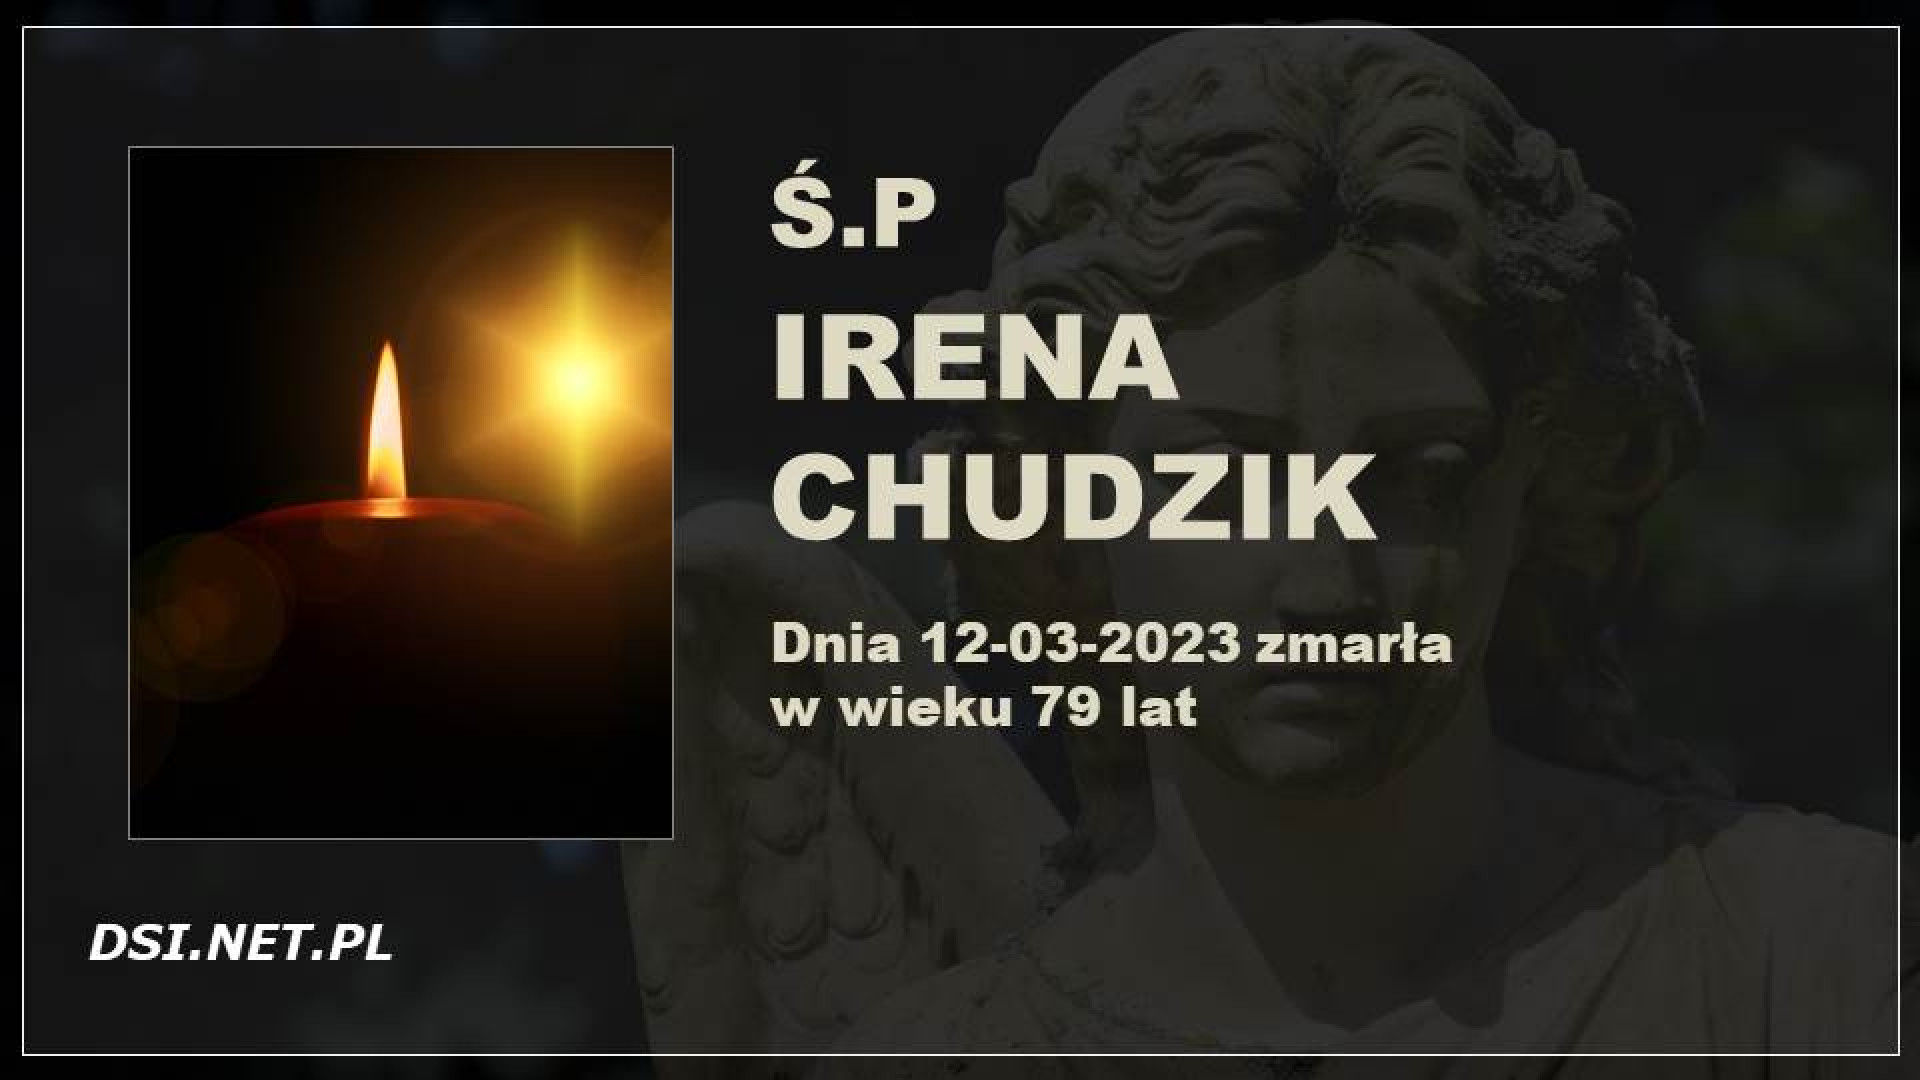 Śp. Irena Chudzik